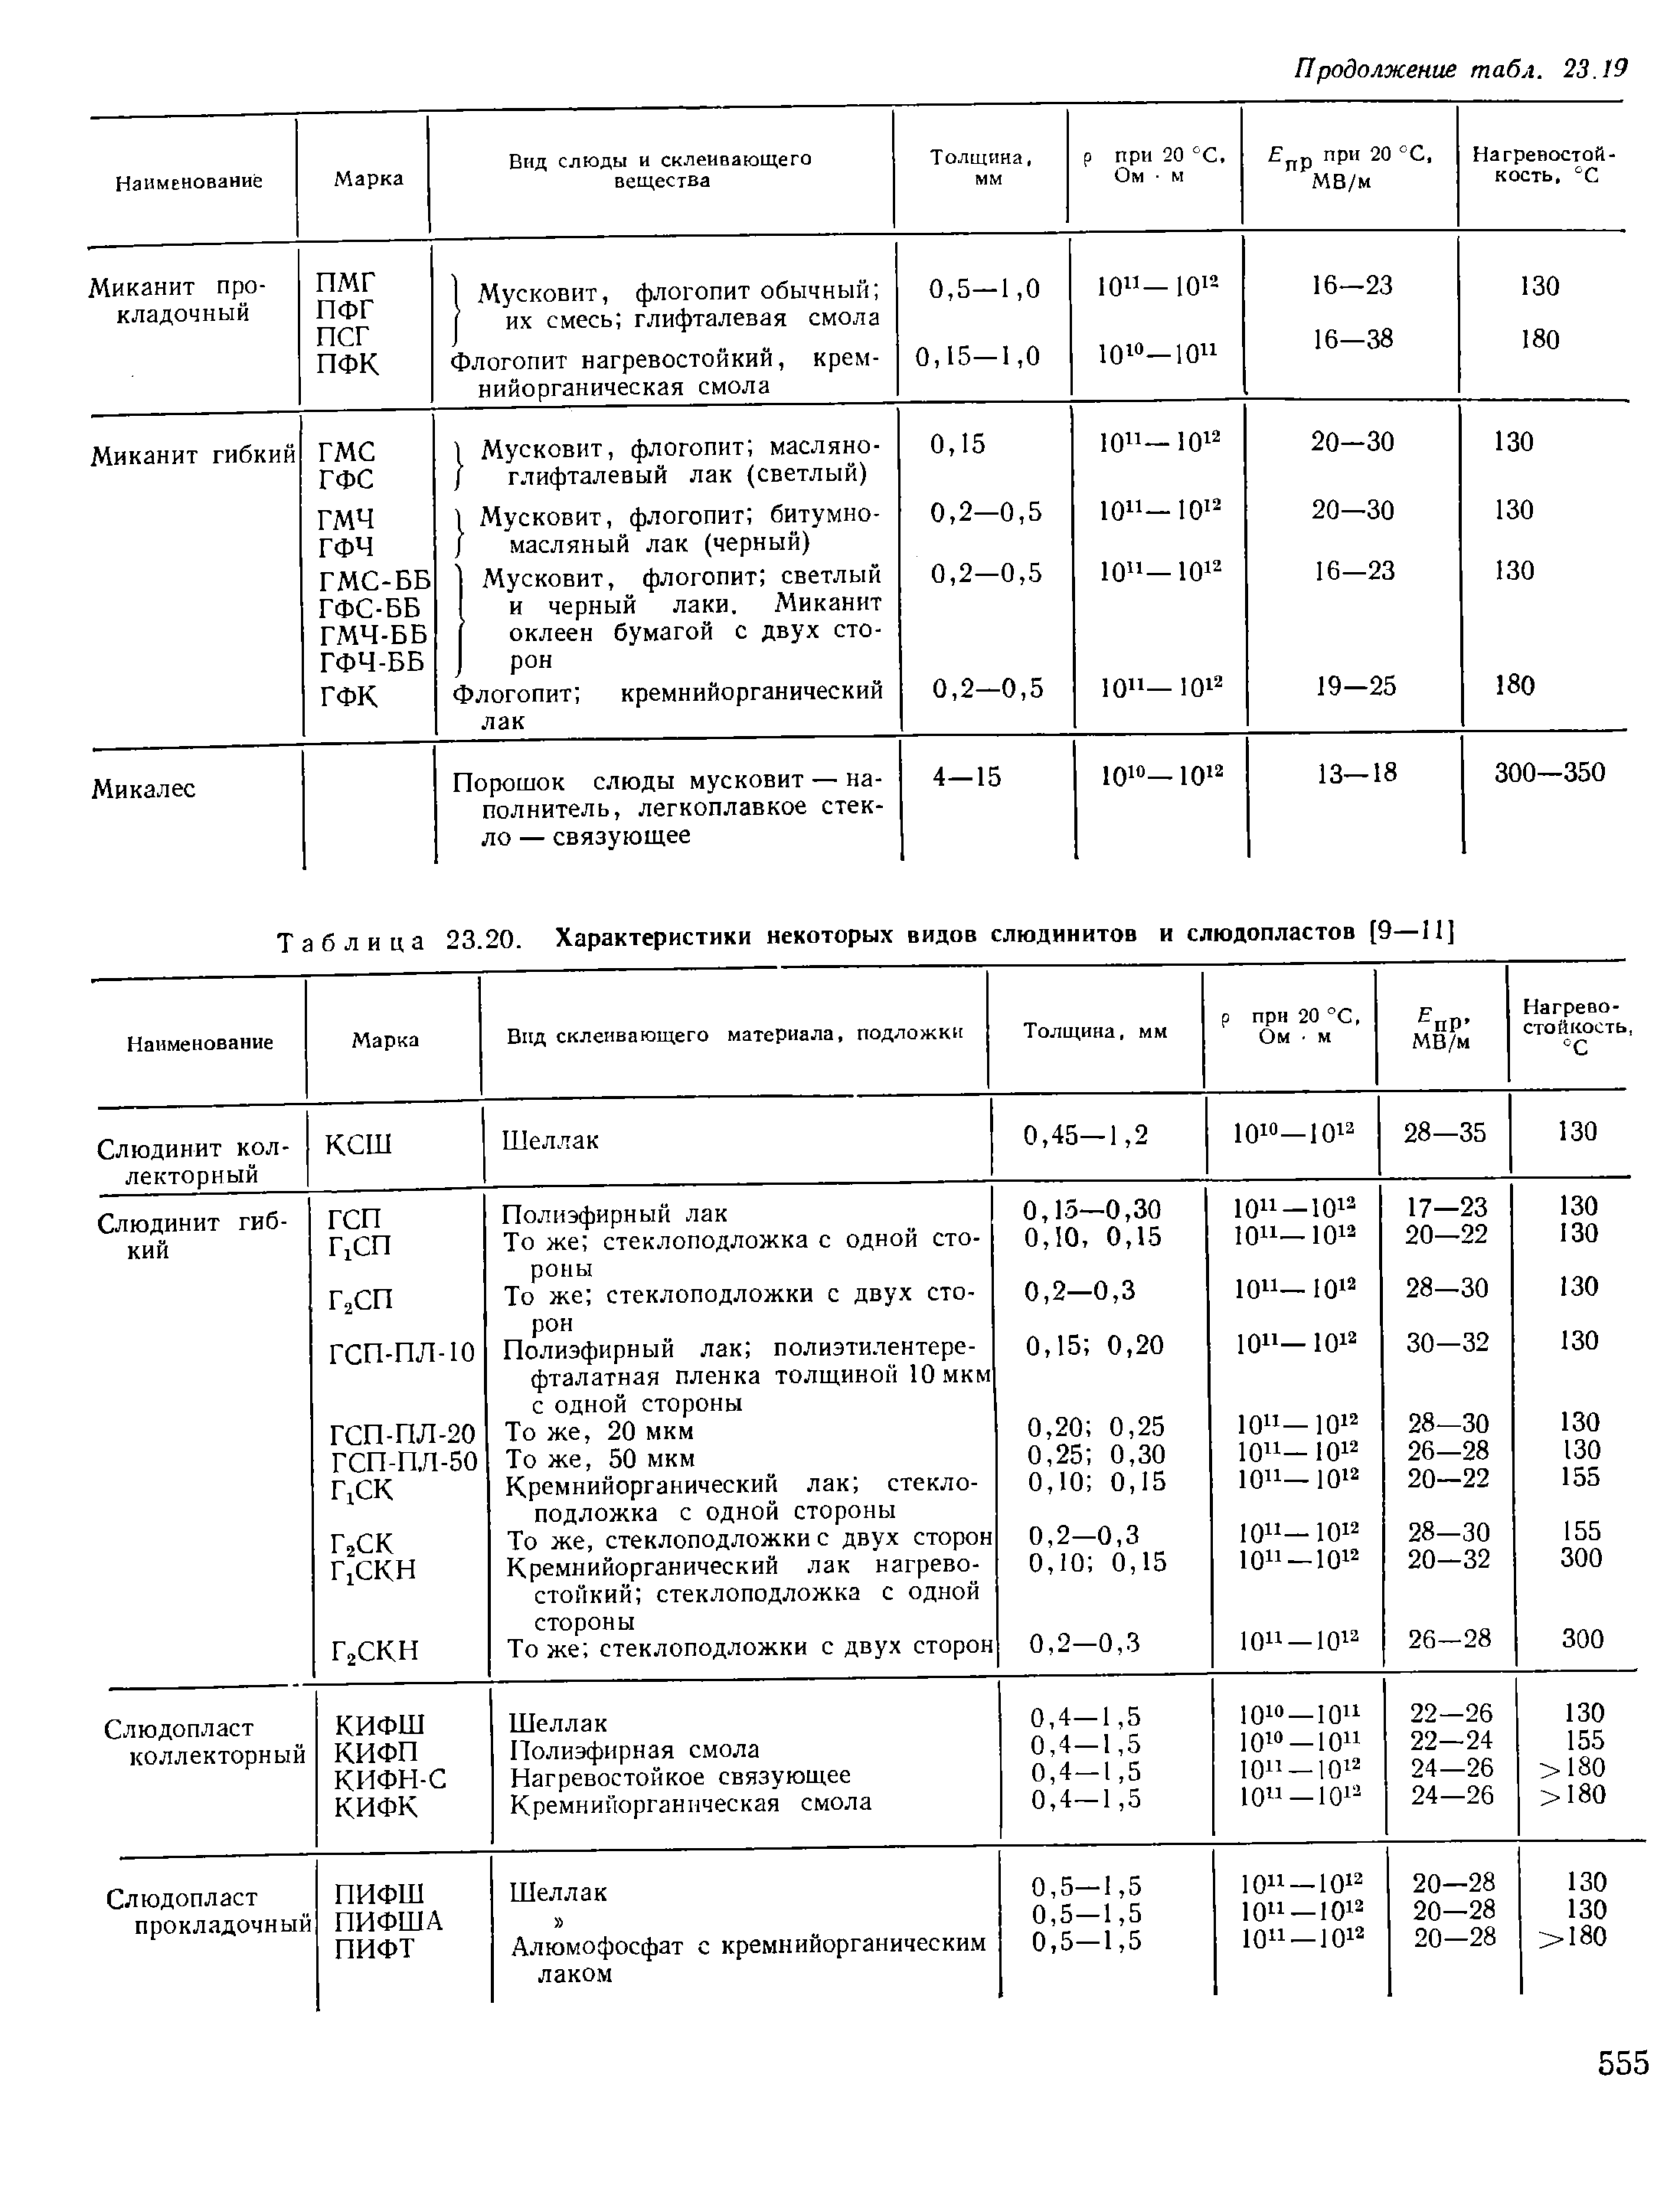 Таблица 23.20. Характеристики некоторых видов слюдинитов и слюдопластов [9—11]
